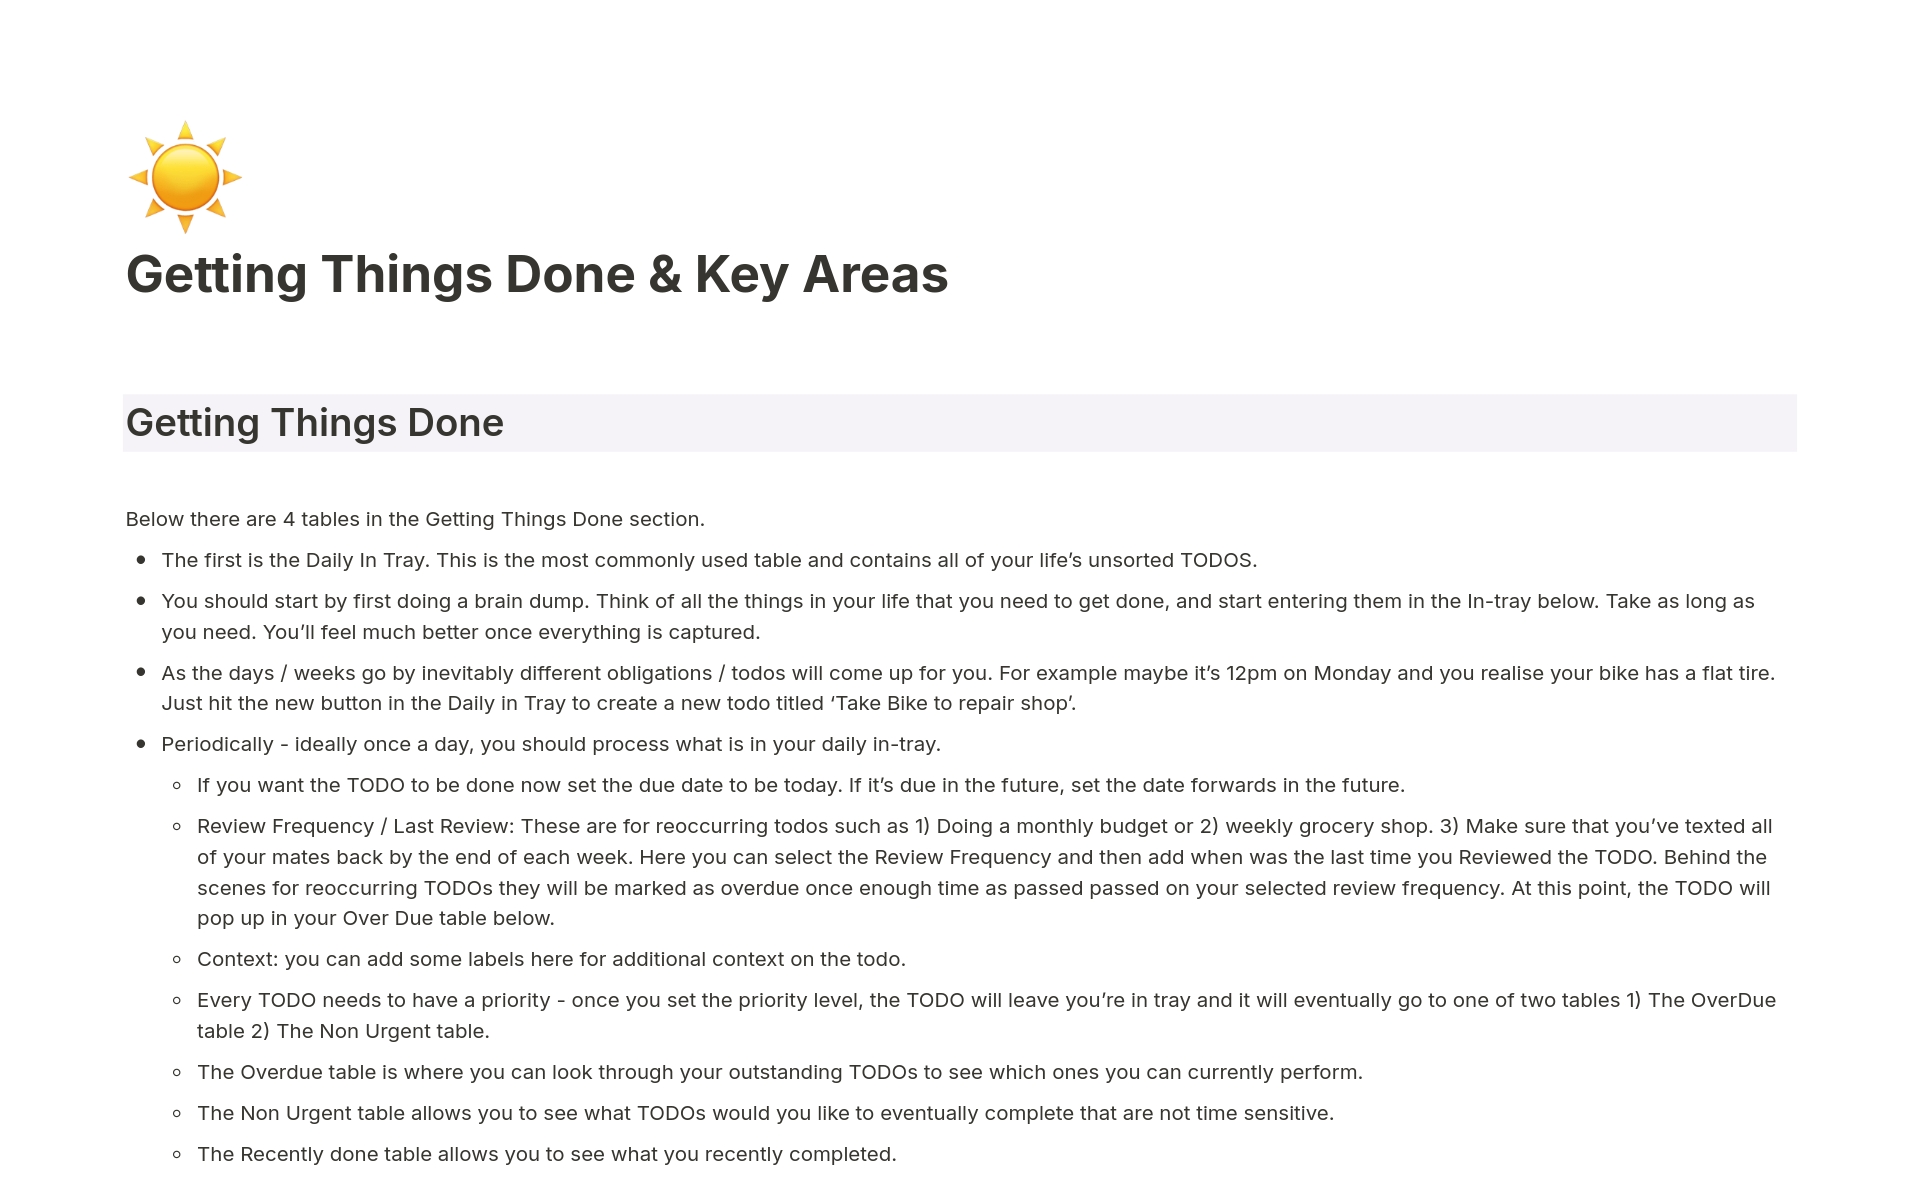 En förhandsgranskning av mallen för Getting Things Done & Key Areas